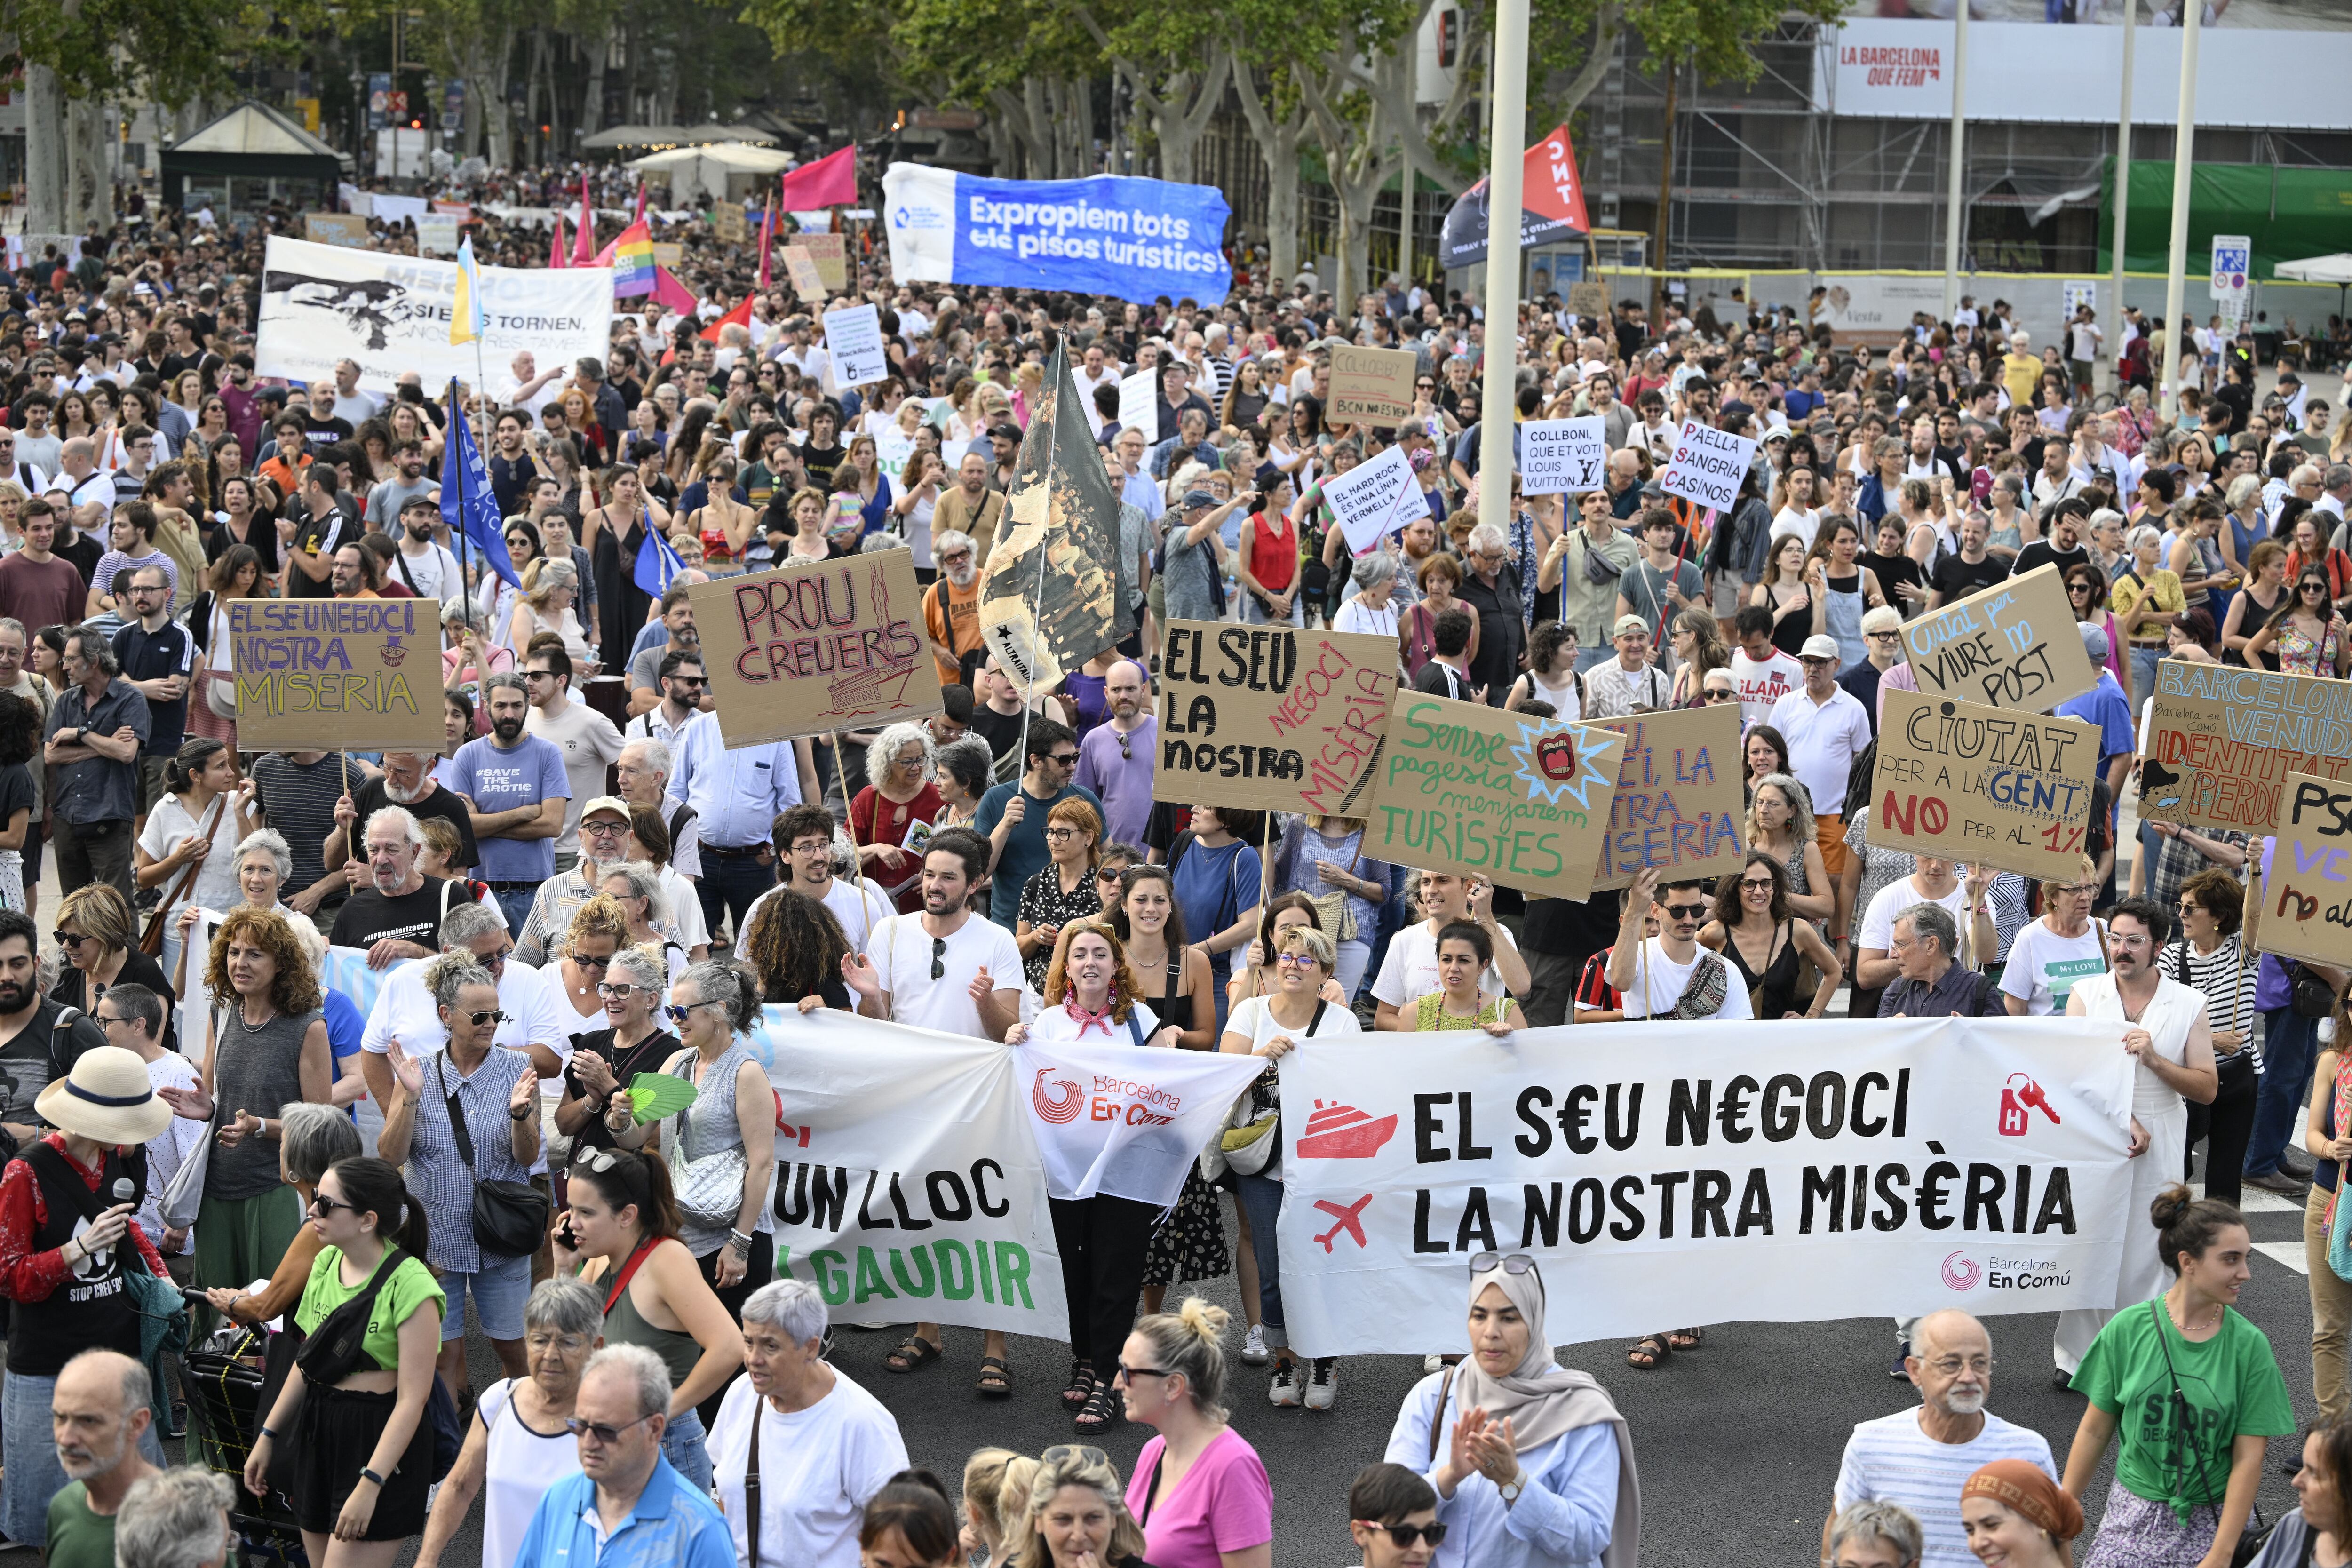 El costo de la vida en Barcelona ha subido considerablemente, según manifiestan sus pobladores. Foto: AFP